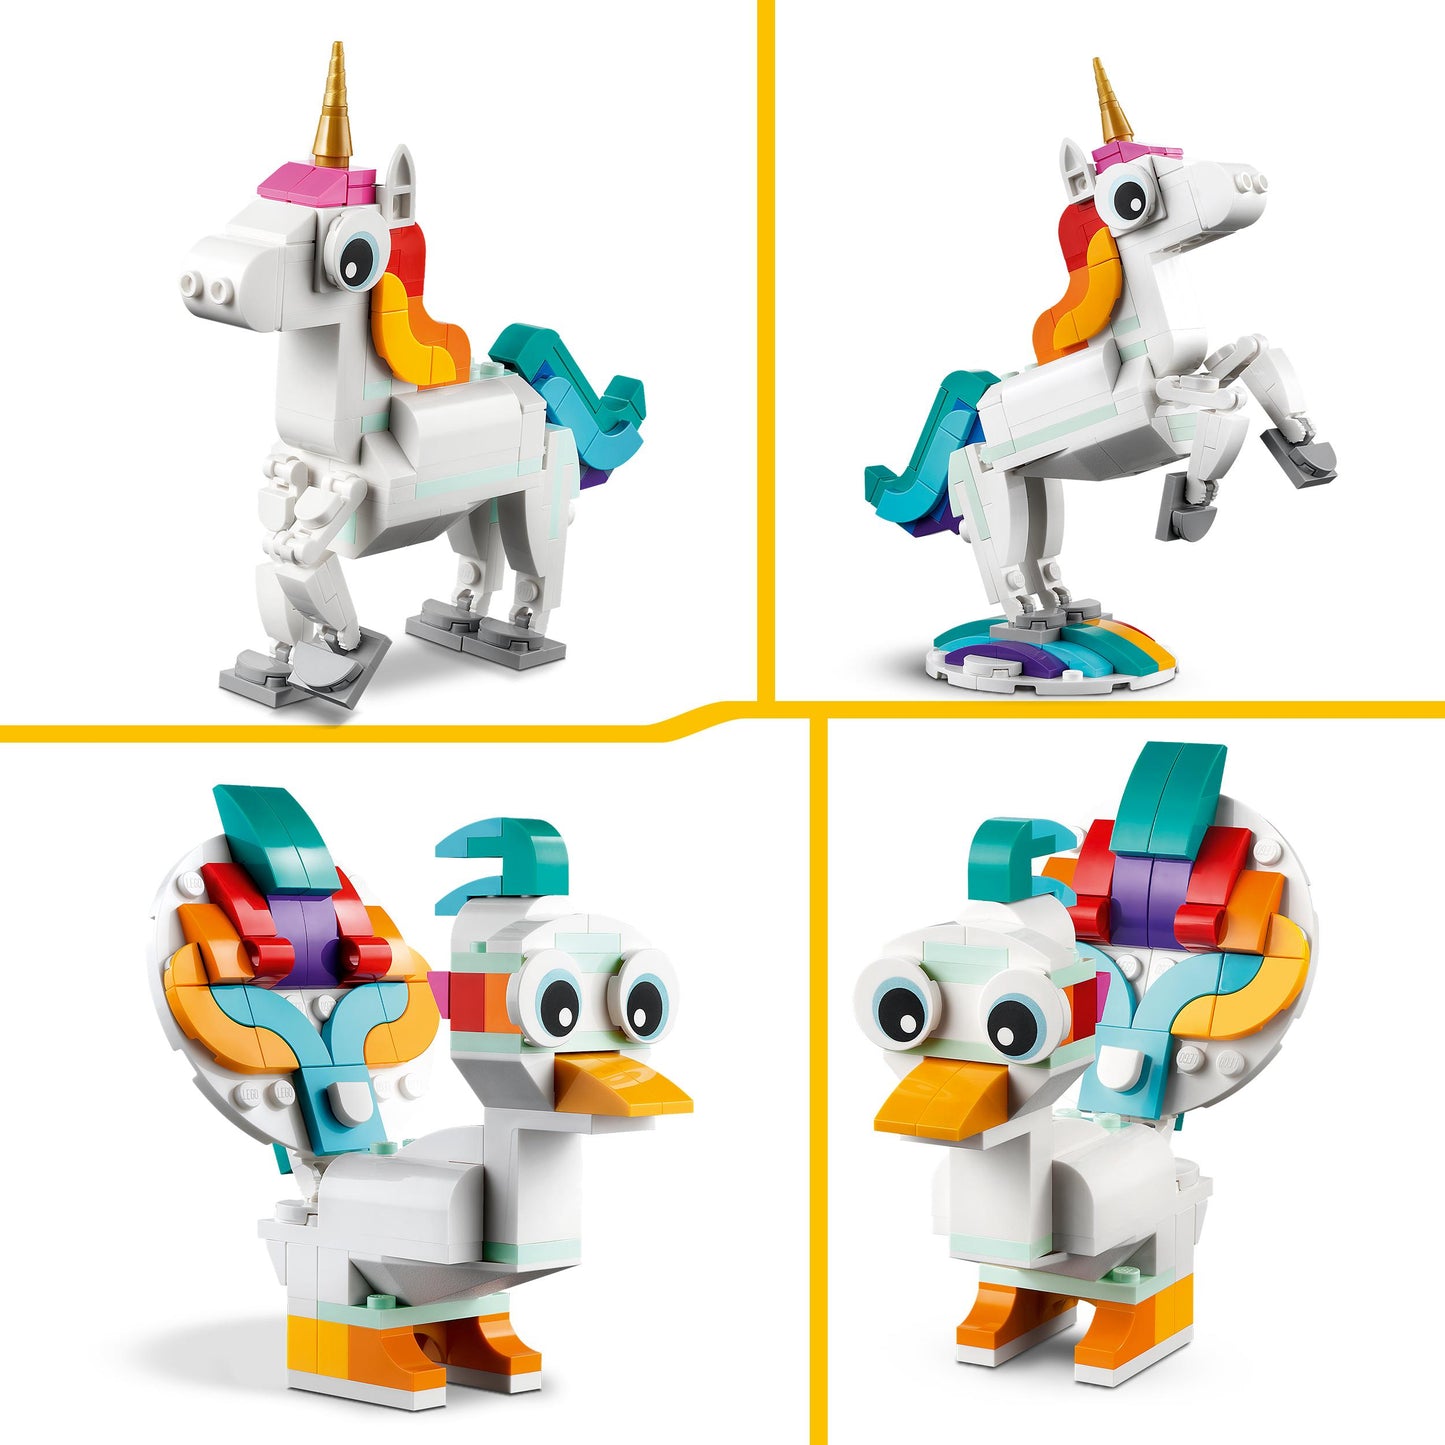 31140 LEGO Creator - Unicorno magico